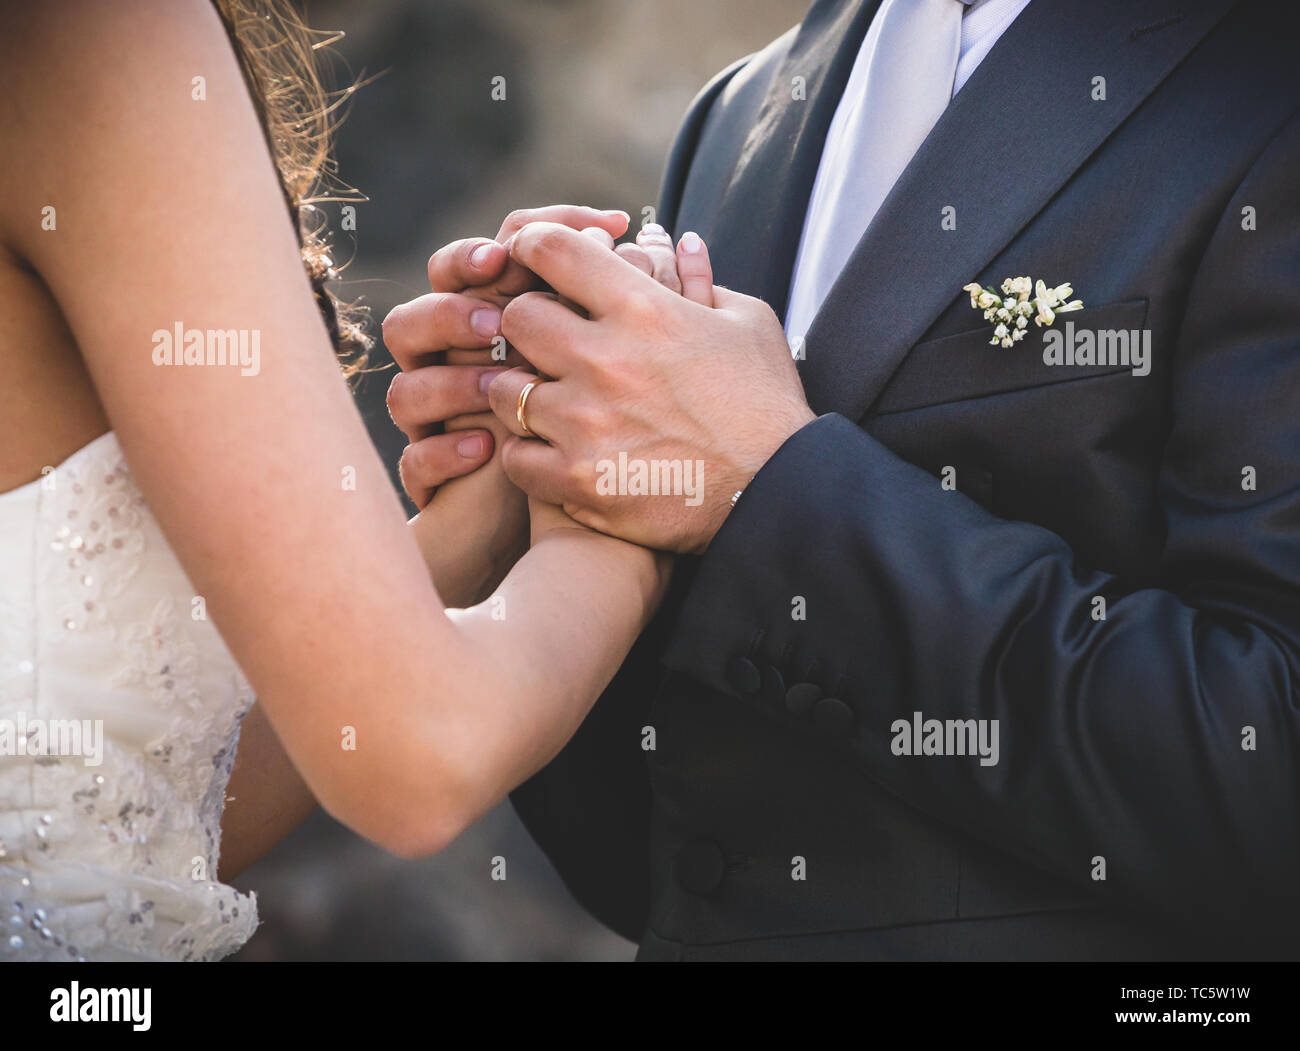 Die Hände der ein Mann und eine Frau halten sich gegenseitig fest. Konzept der Hochzeit und Beziehung. Stockfoto